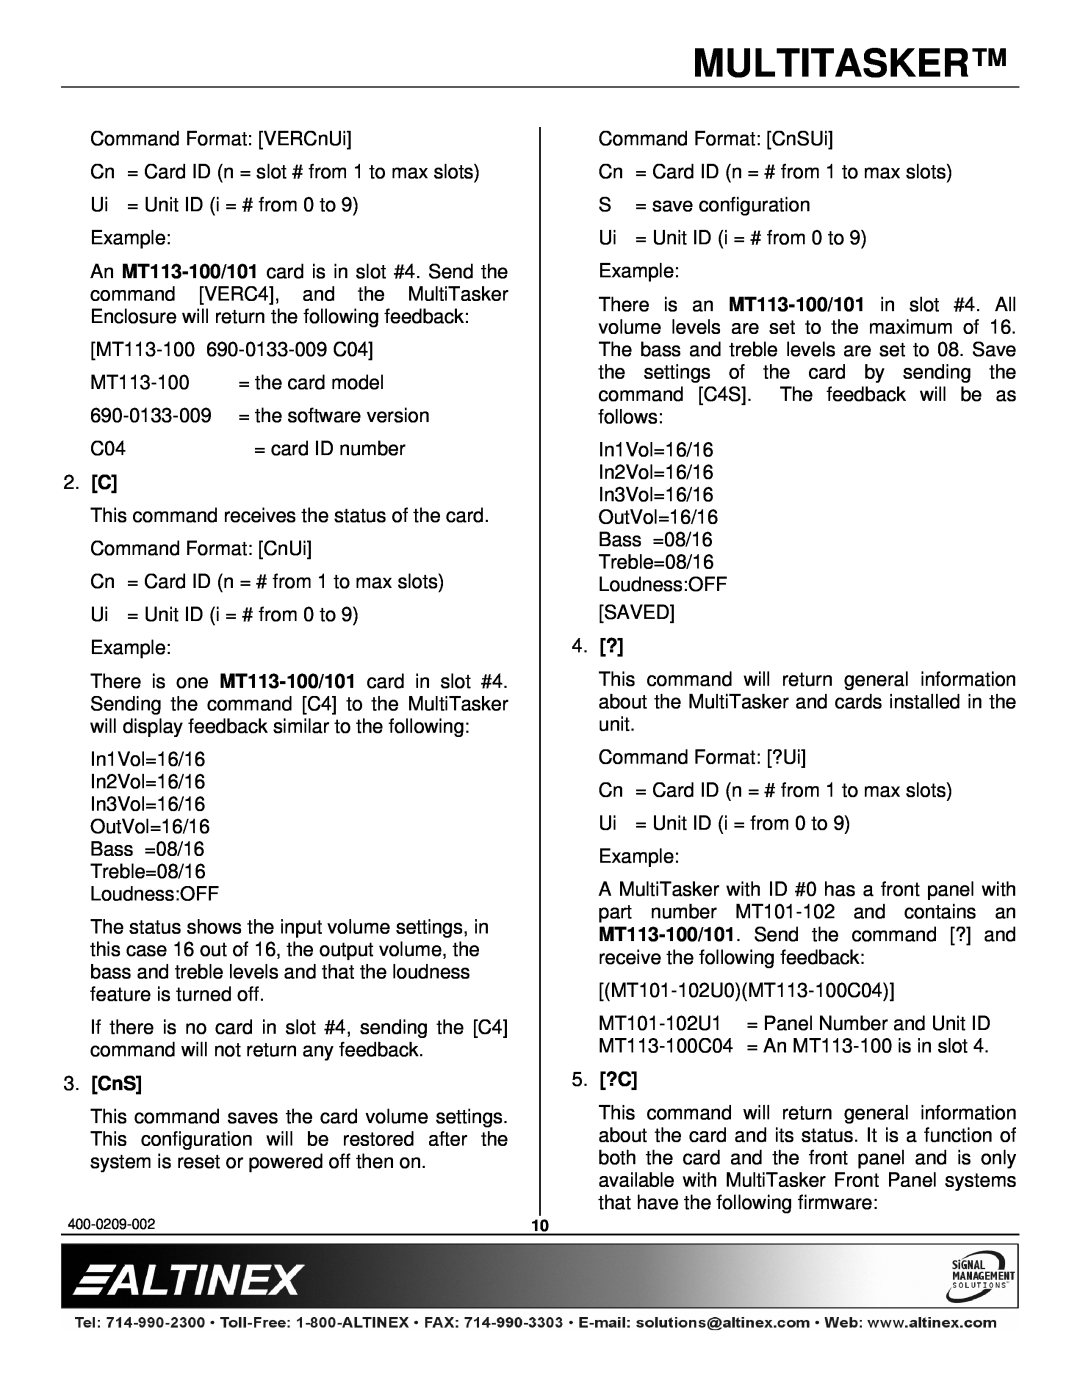 Altinex MT113-100, MT113-101 manual 3.CnS, 5.?C, Multitasker 